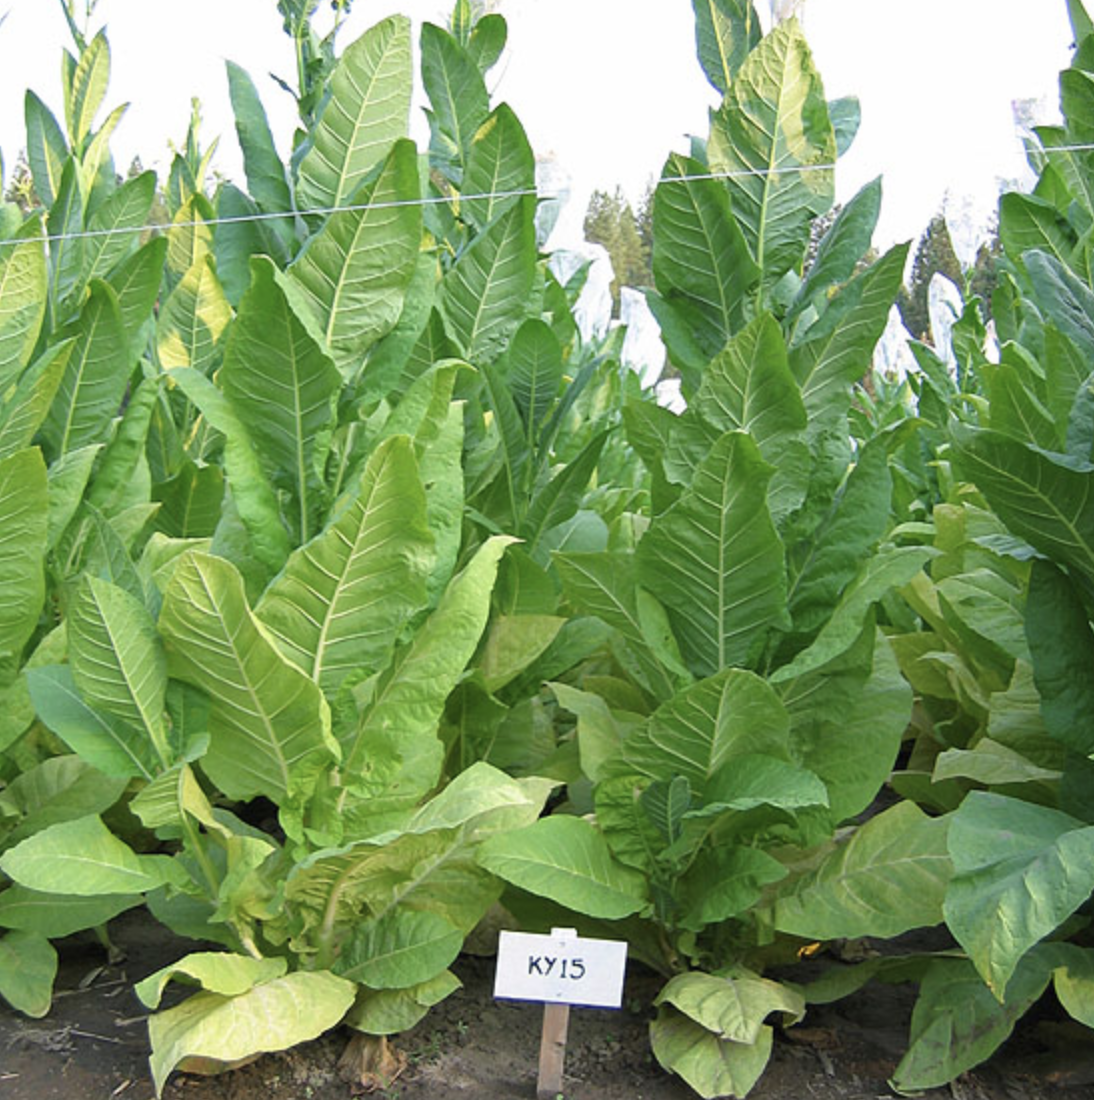 ky-15-tobacco-seed-urban-farmer